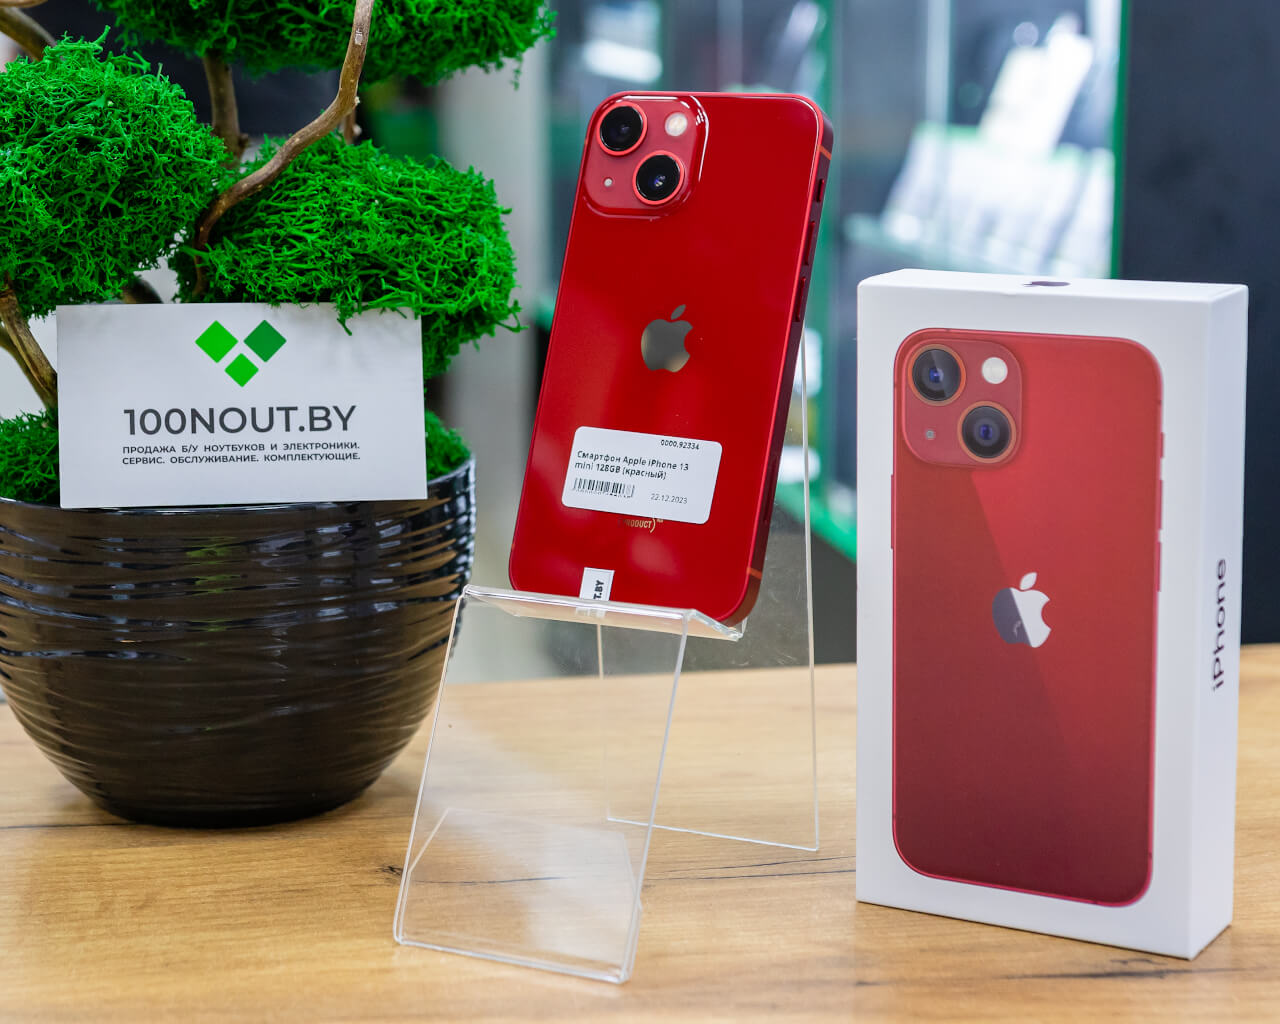 Смартфон Apple iPhone 13 mini 128GB (красный) б/у купить недорого в Минске  - 100NOUT